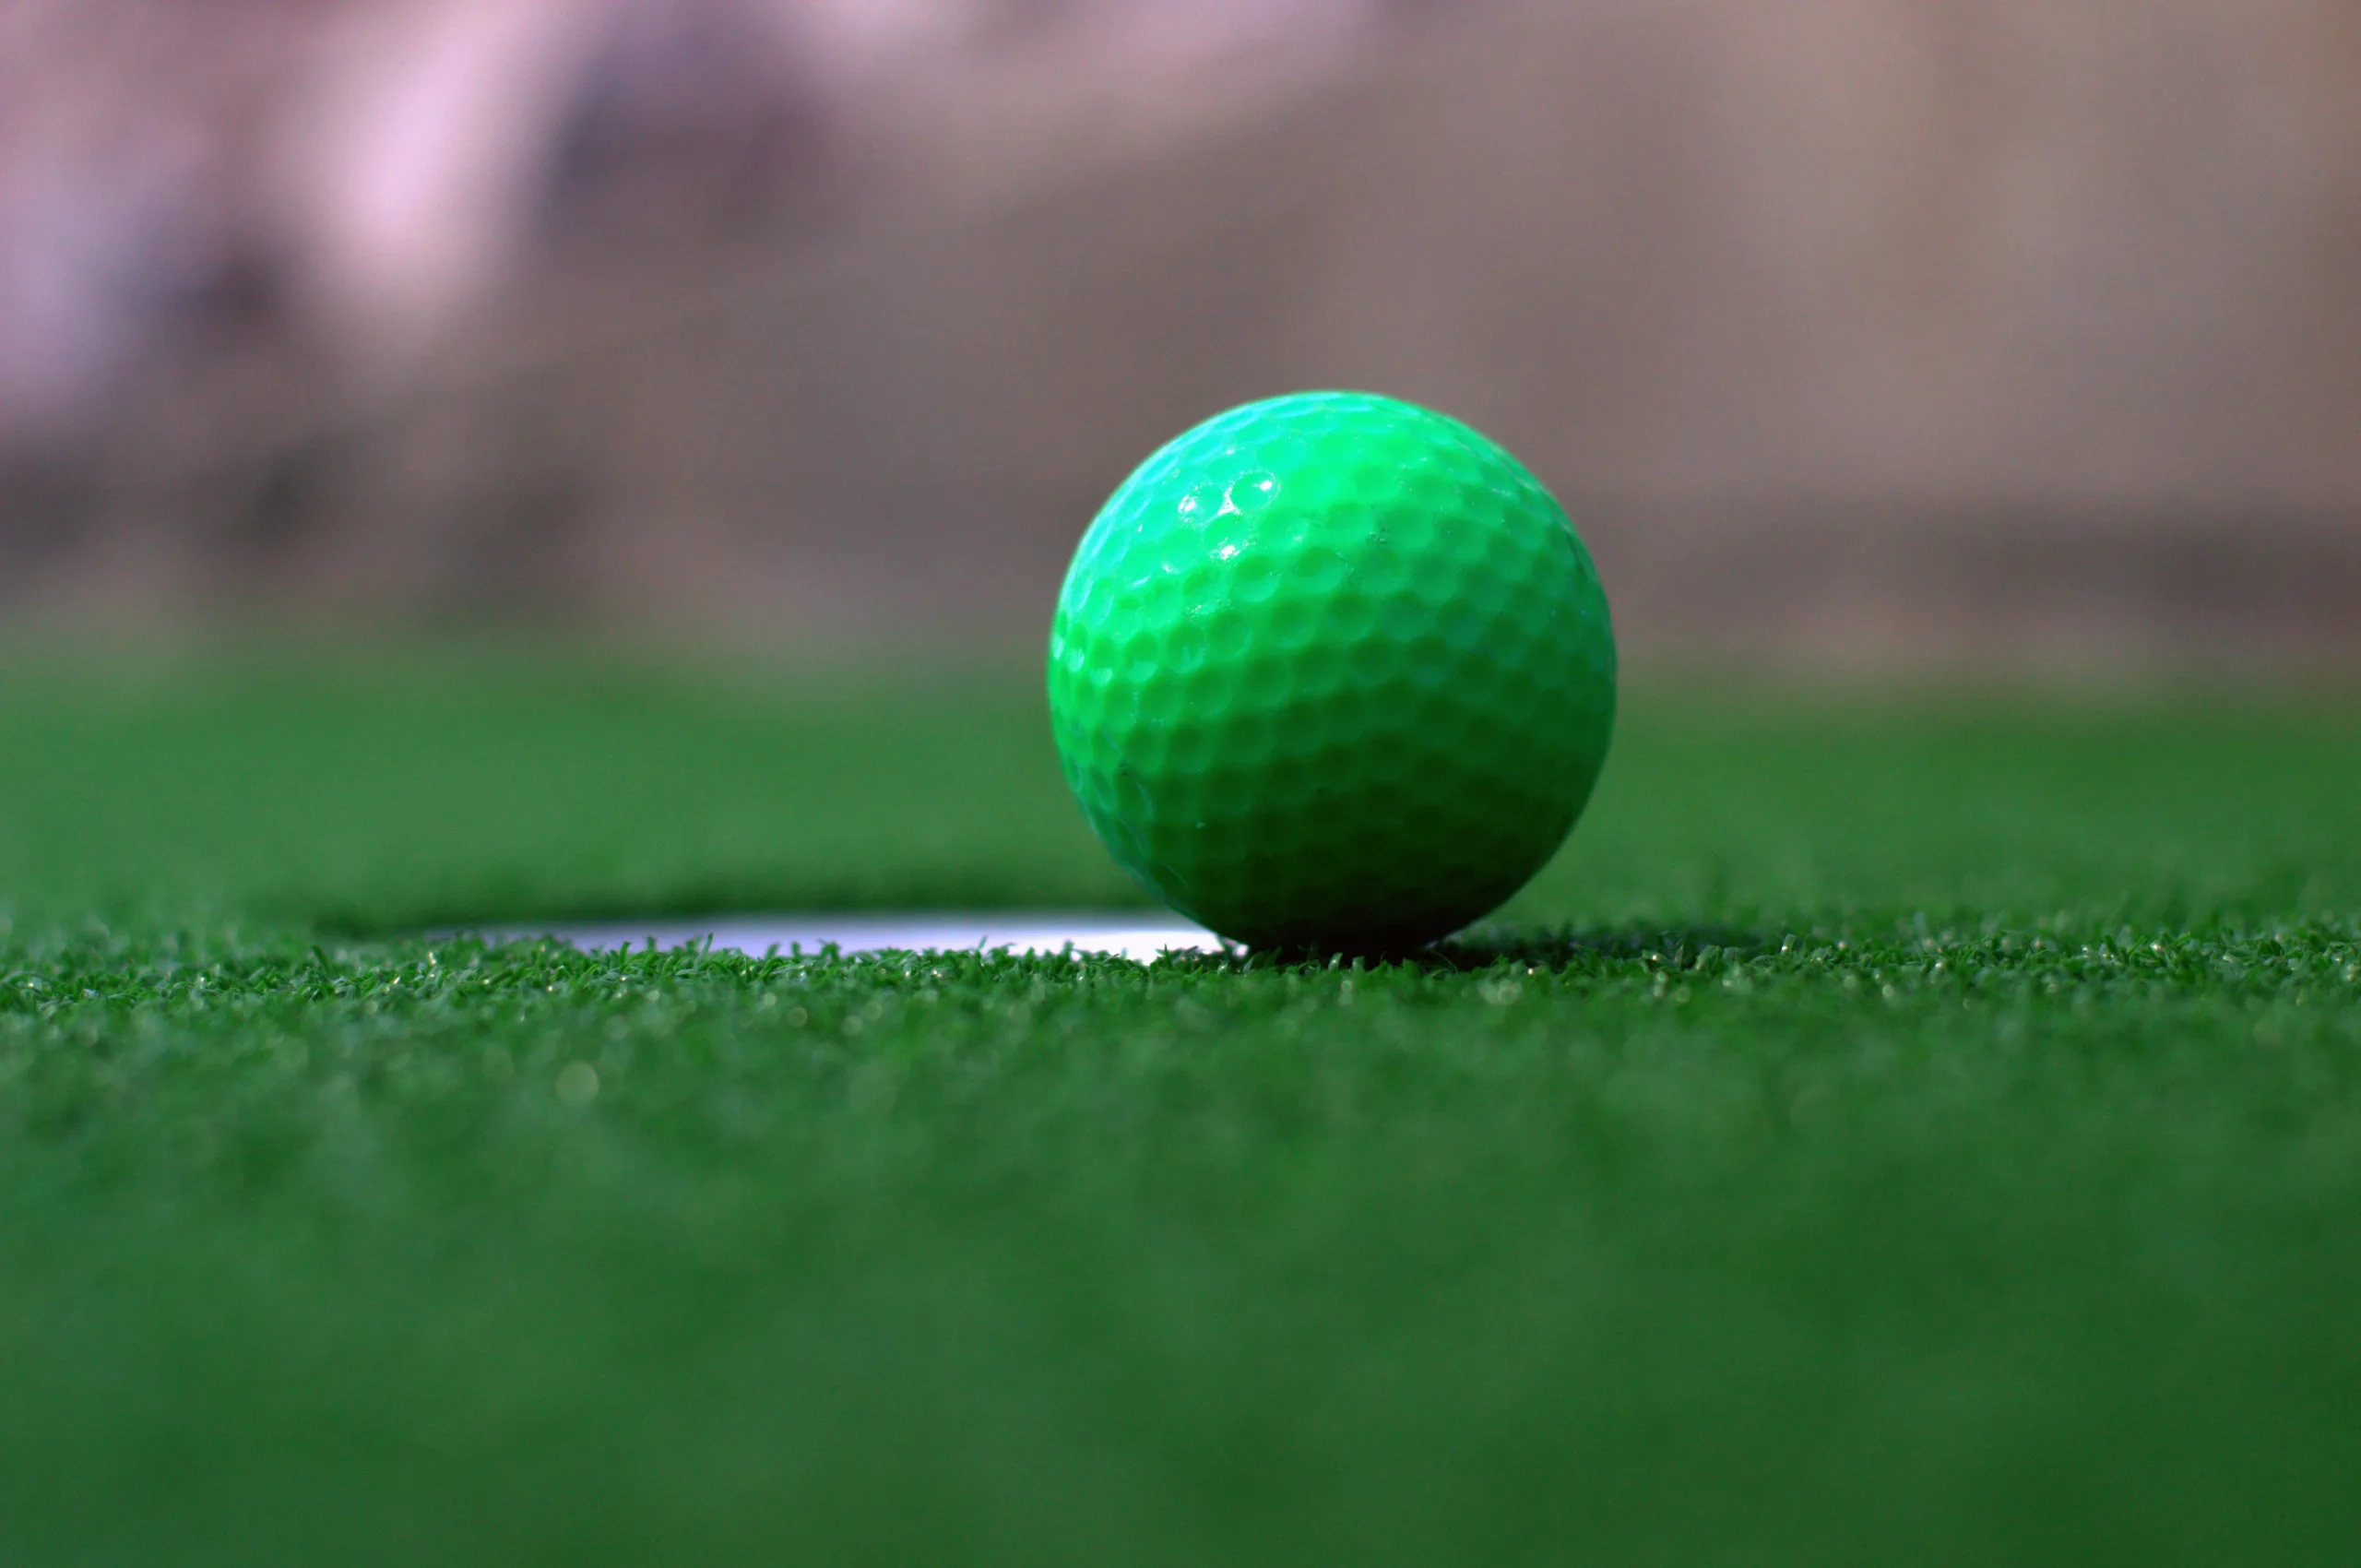 Green mini-golf ball by a hole